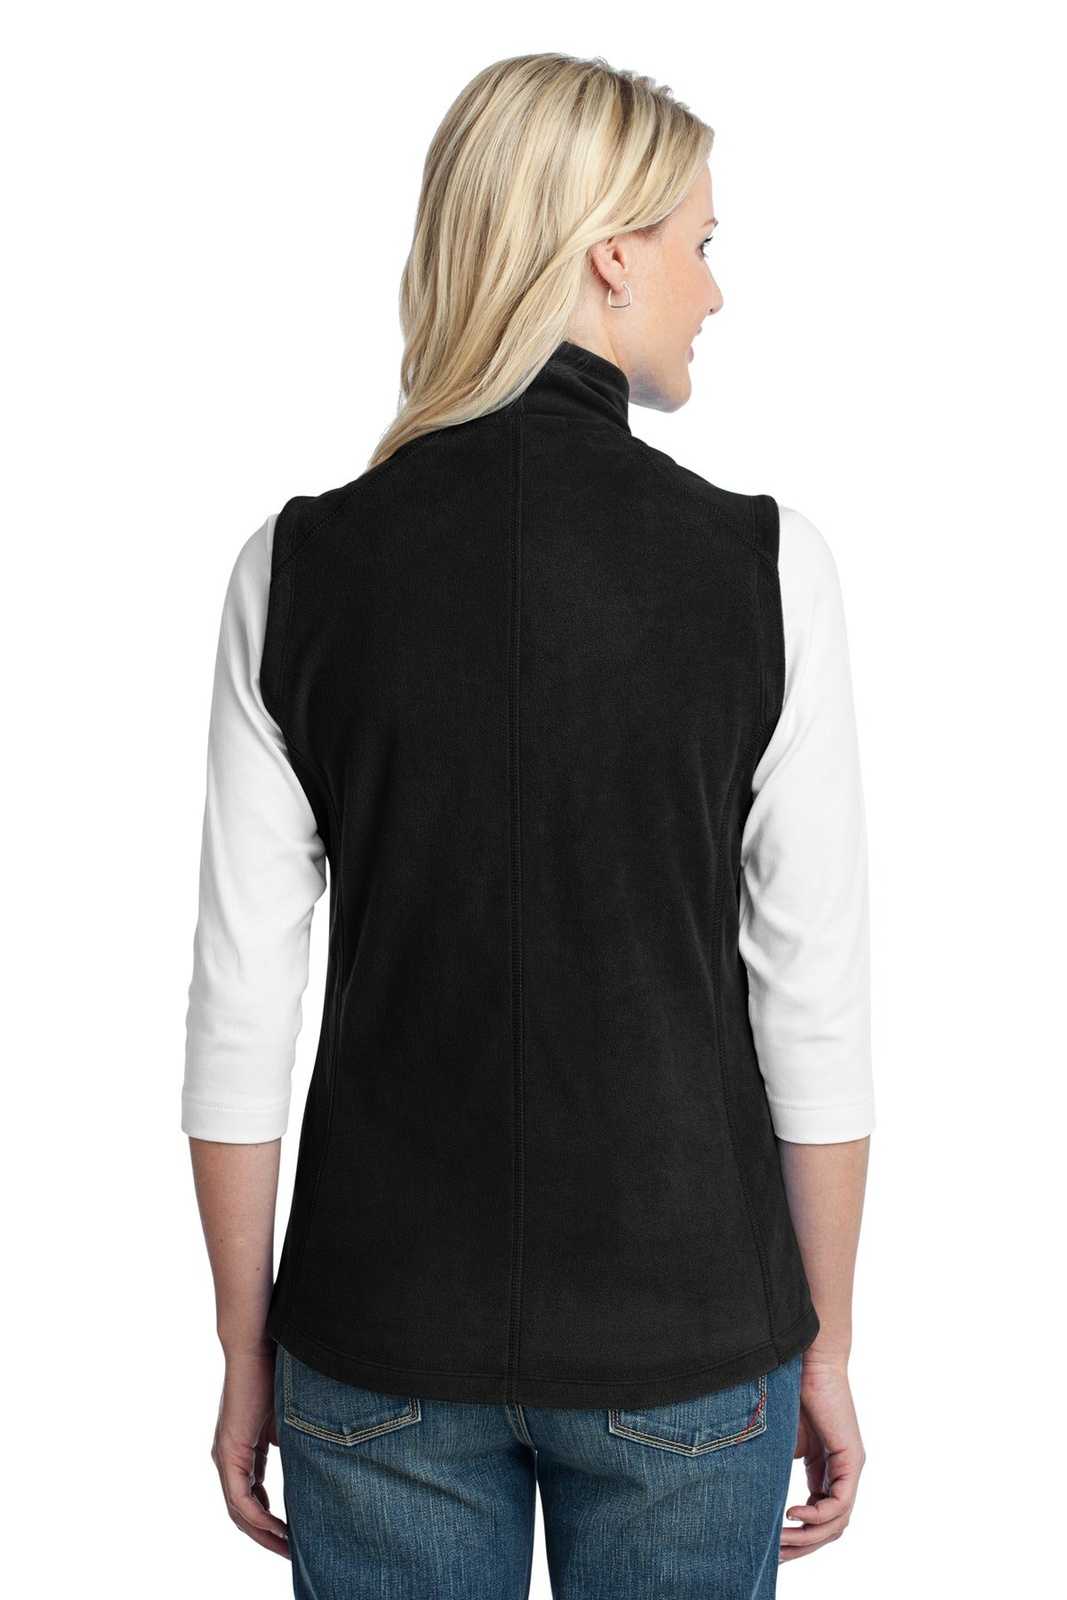 Port Authority L226 Ladies Microfleece Vest - Black - HIT a Double - 1